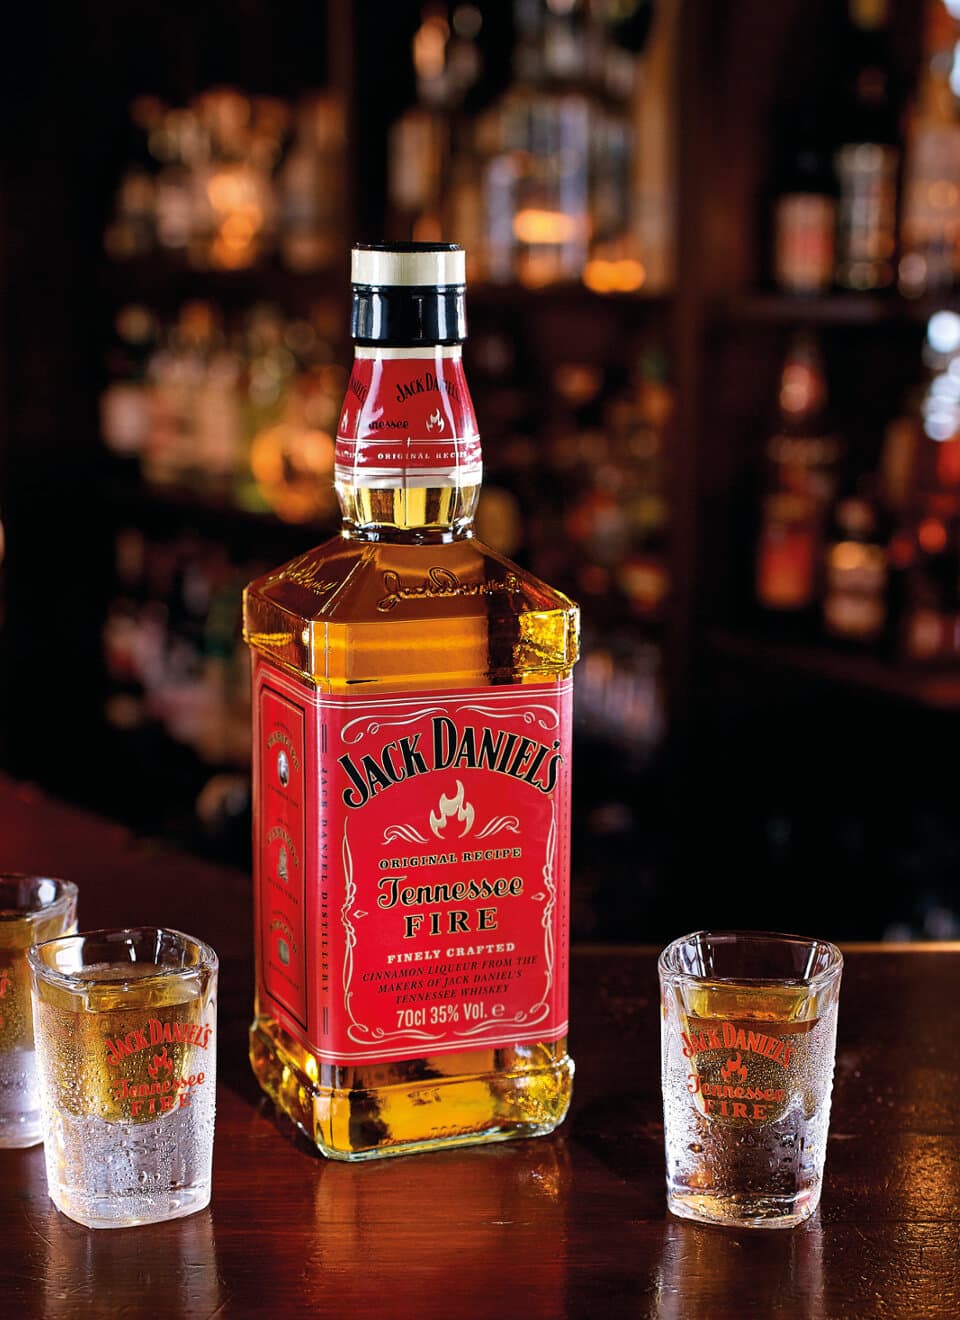 Jack Daniels Tennessee Fire Whiskey-Zimt-Likör 0,7 L